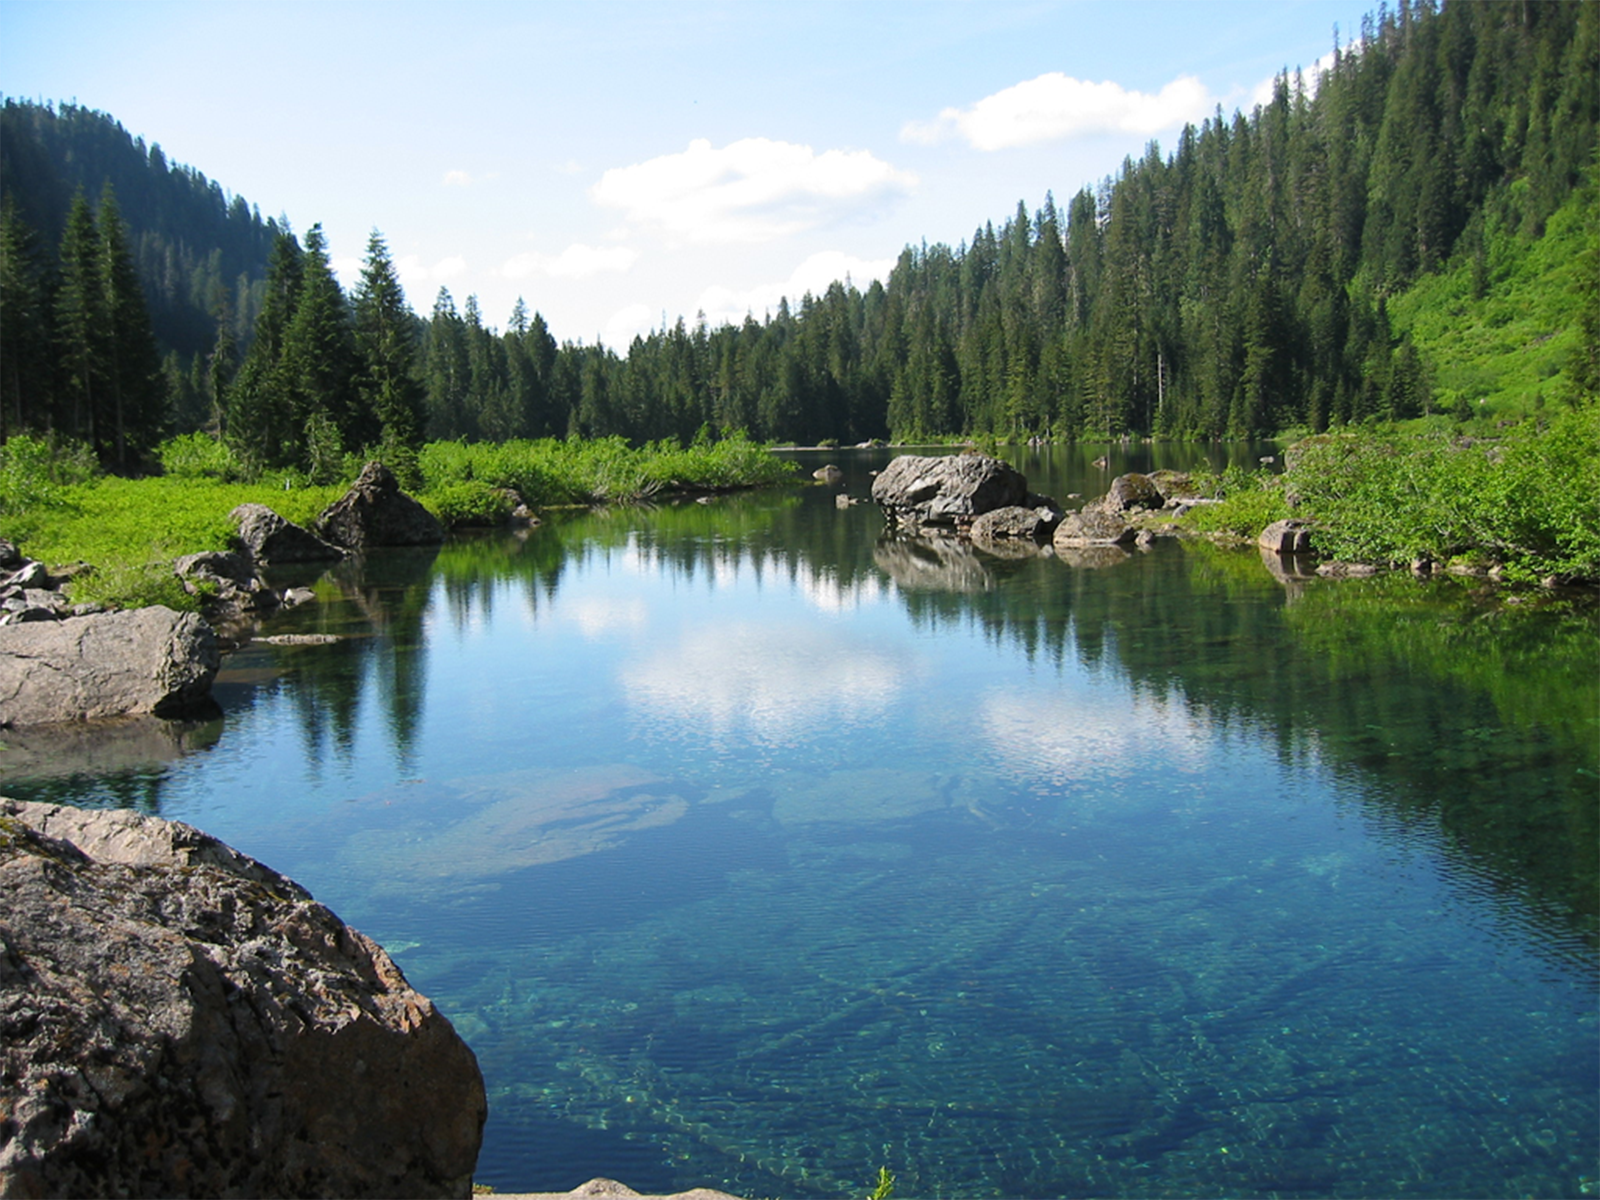 Fotografia przestawia jezioro w lesie. W wodzie odbija się błękitne niebo i zielone drzewa. Przy brzegu jeziora leżą liczne skały.